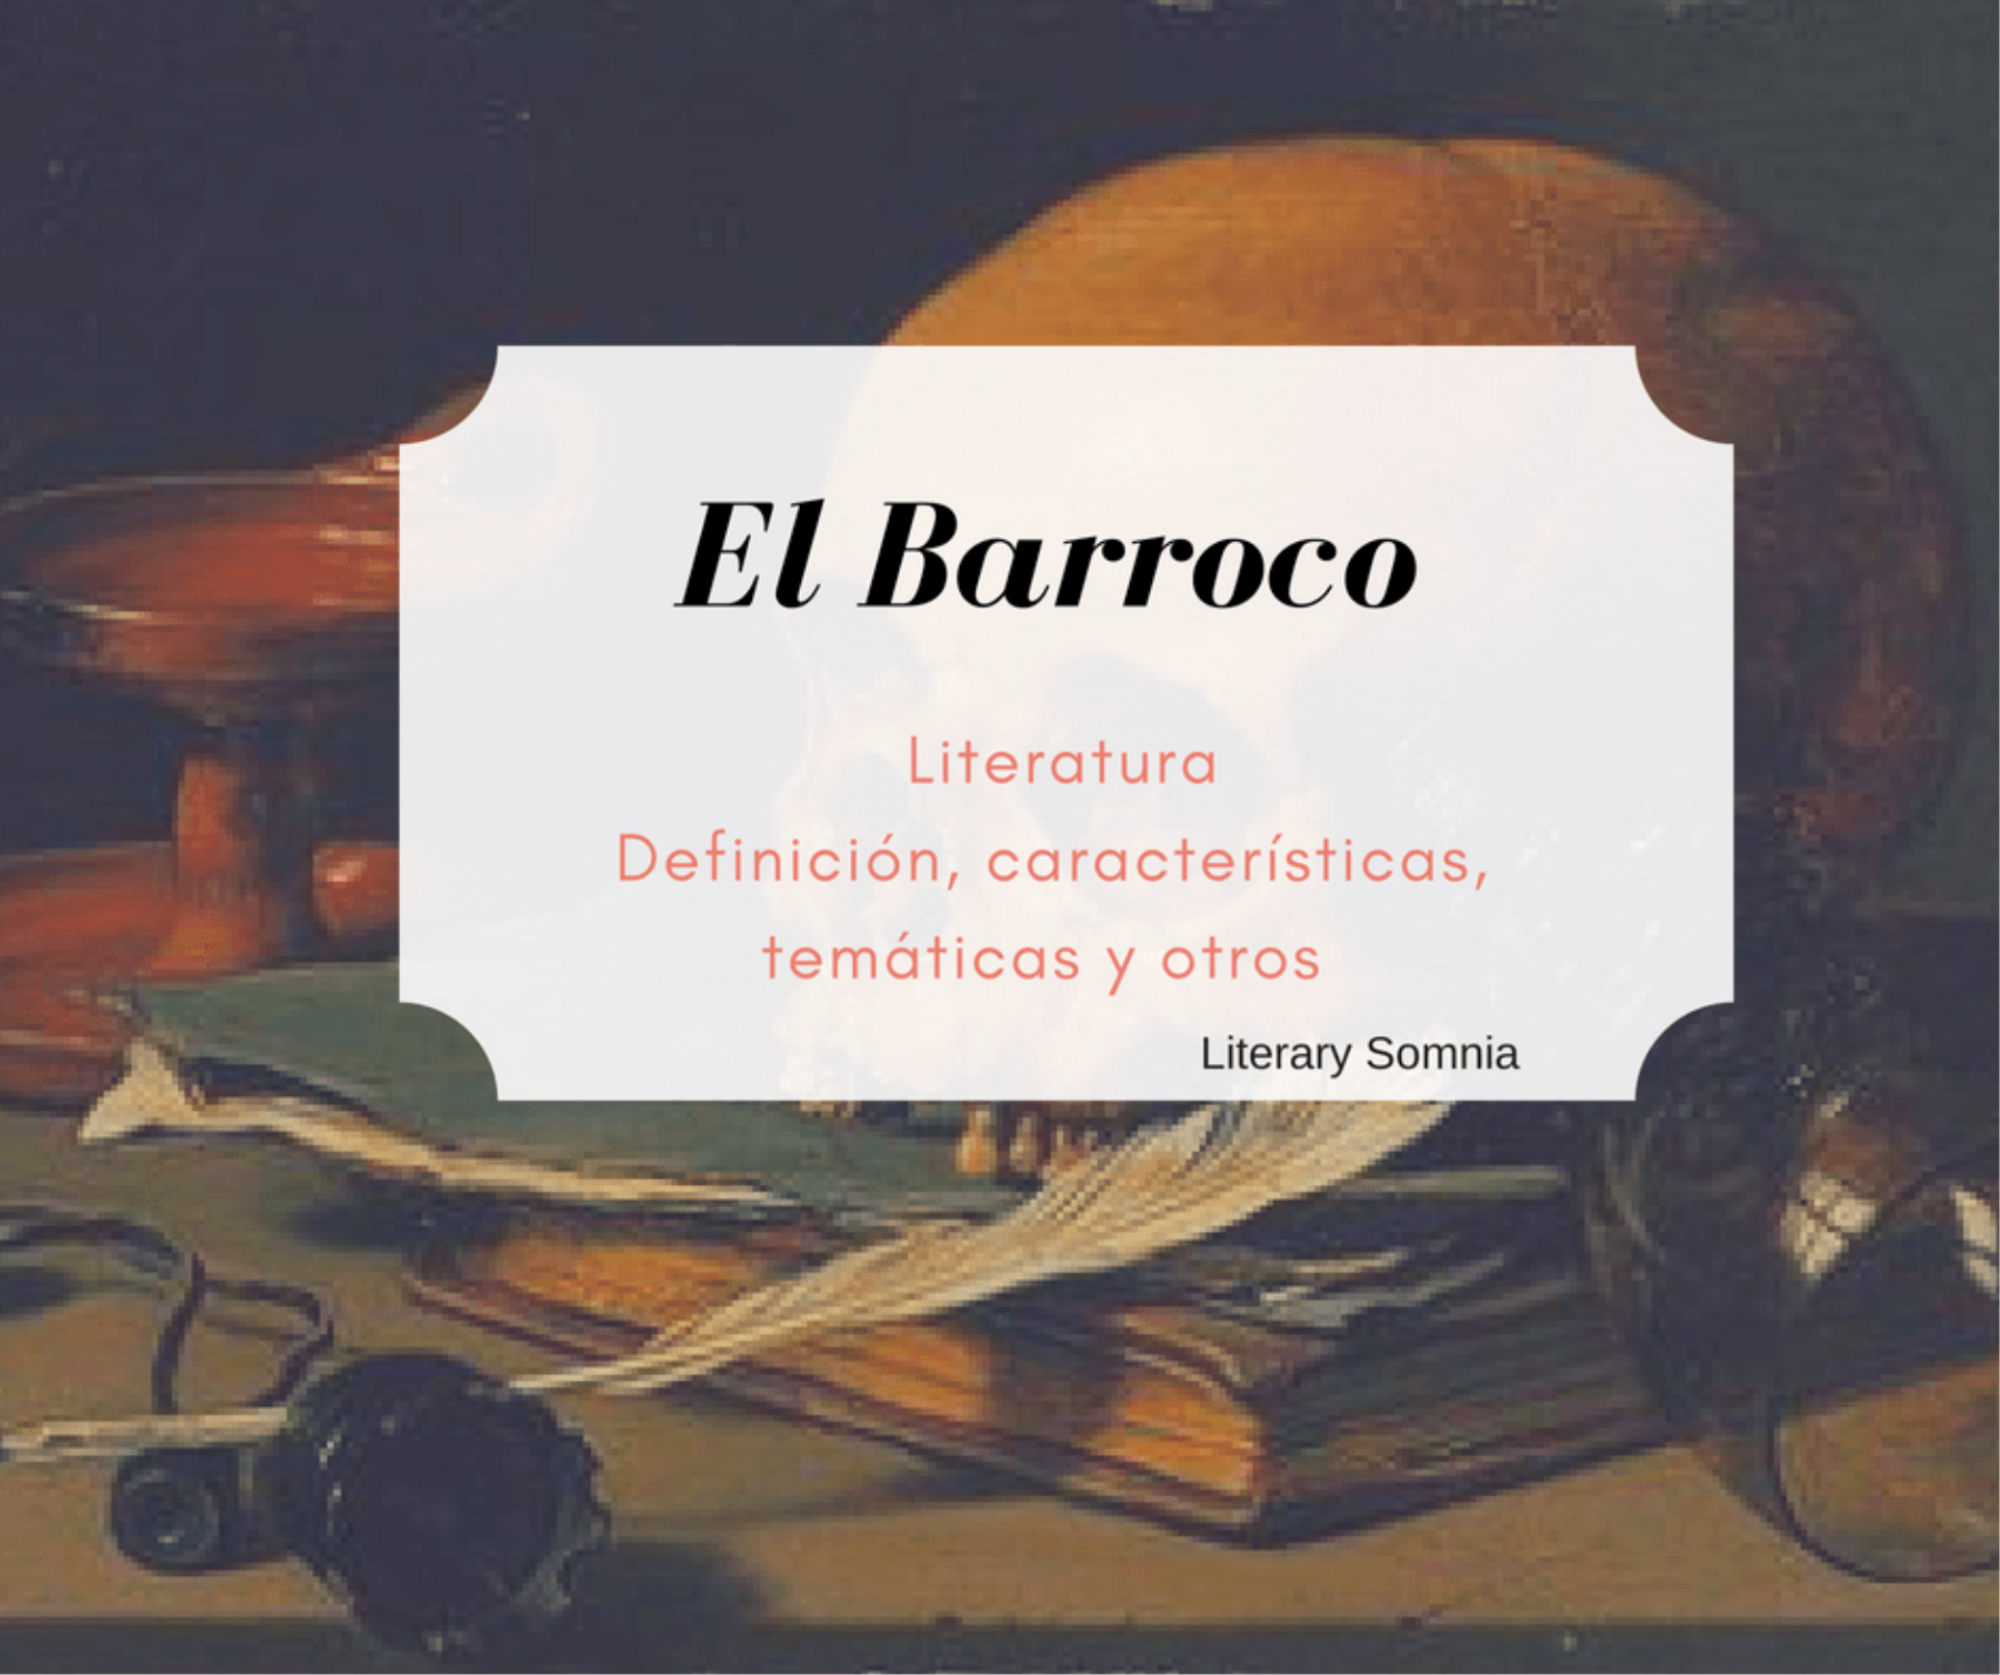 Estimar Cenar Plaga El barroco - Definición, características, temas, autores y obras